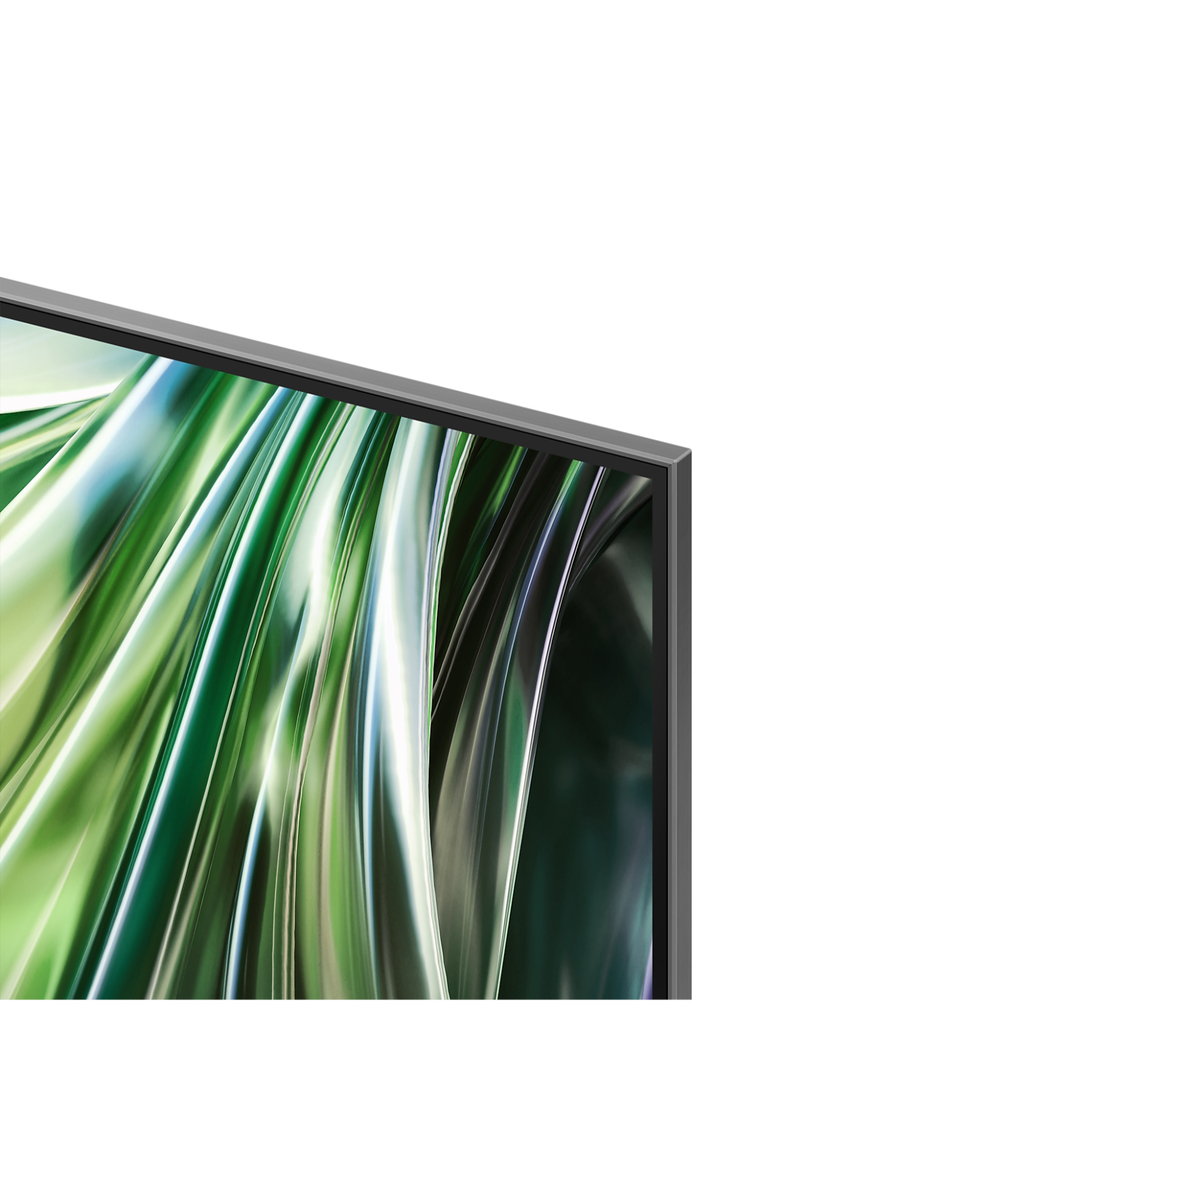 Samsung QN90D 55 inches 4K Smart QLED TV, QA55QN90DAUXZN